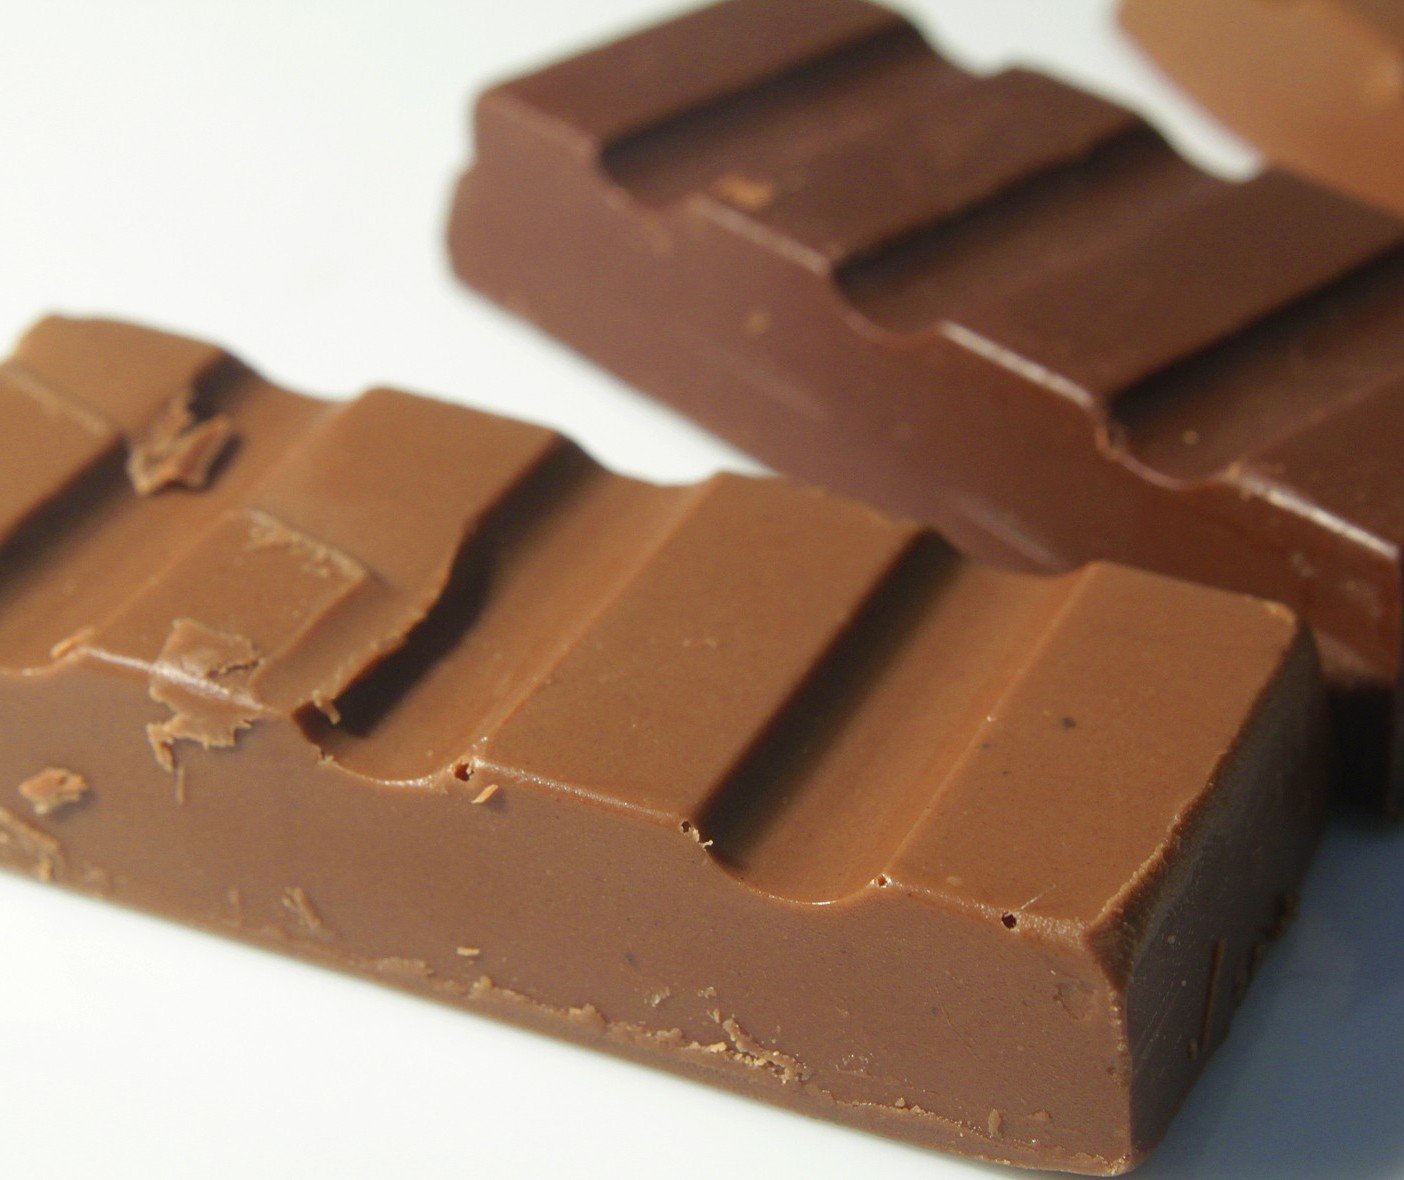 Homem é preso após furtar quase R$ 300 em barras de chocolate